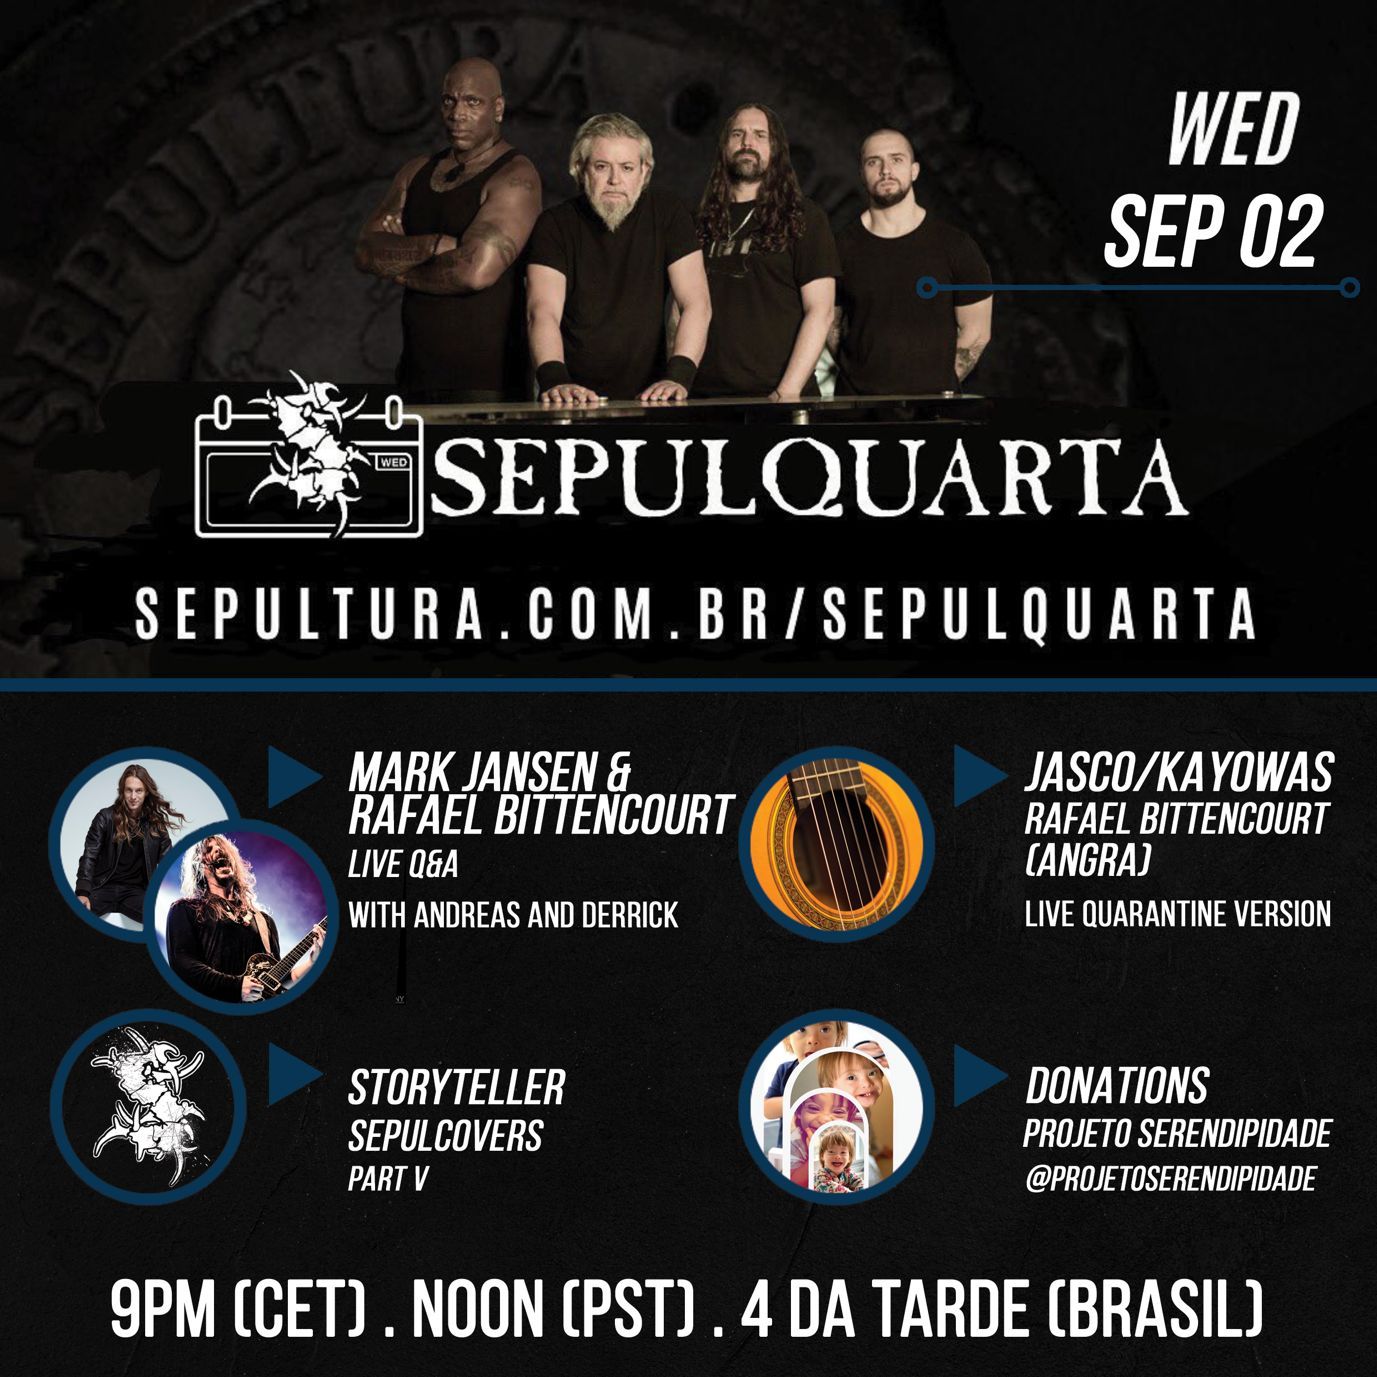 Mark Jansen und Rafael Bittencourt als Gäste für "SepulQuarta" angekündigt